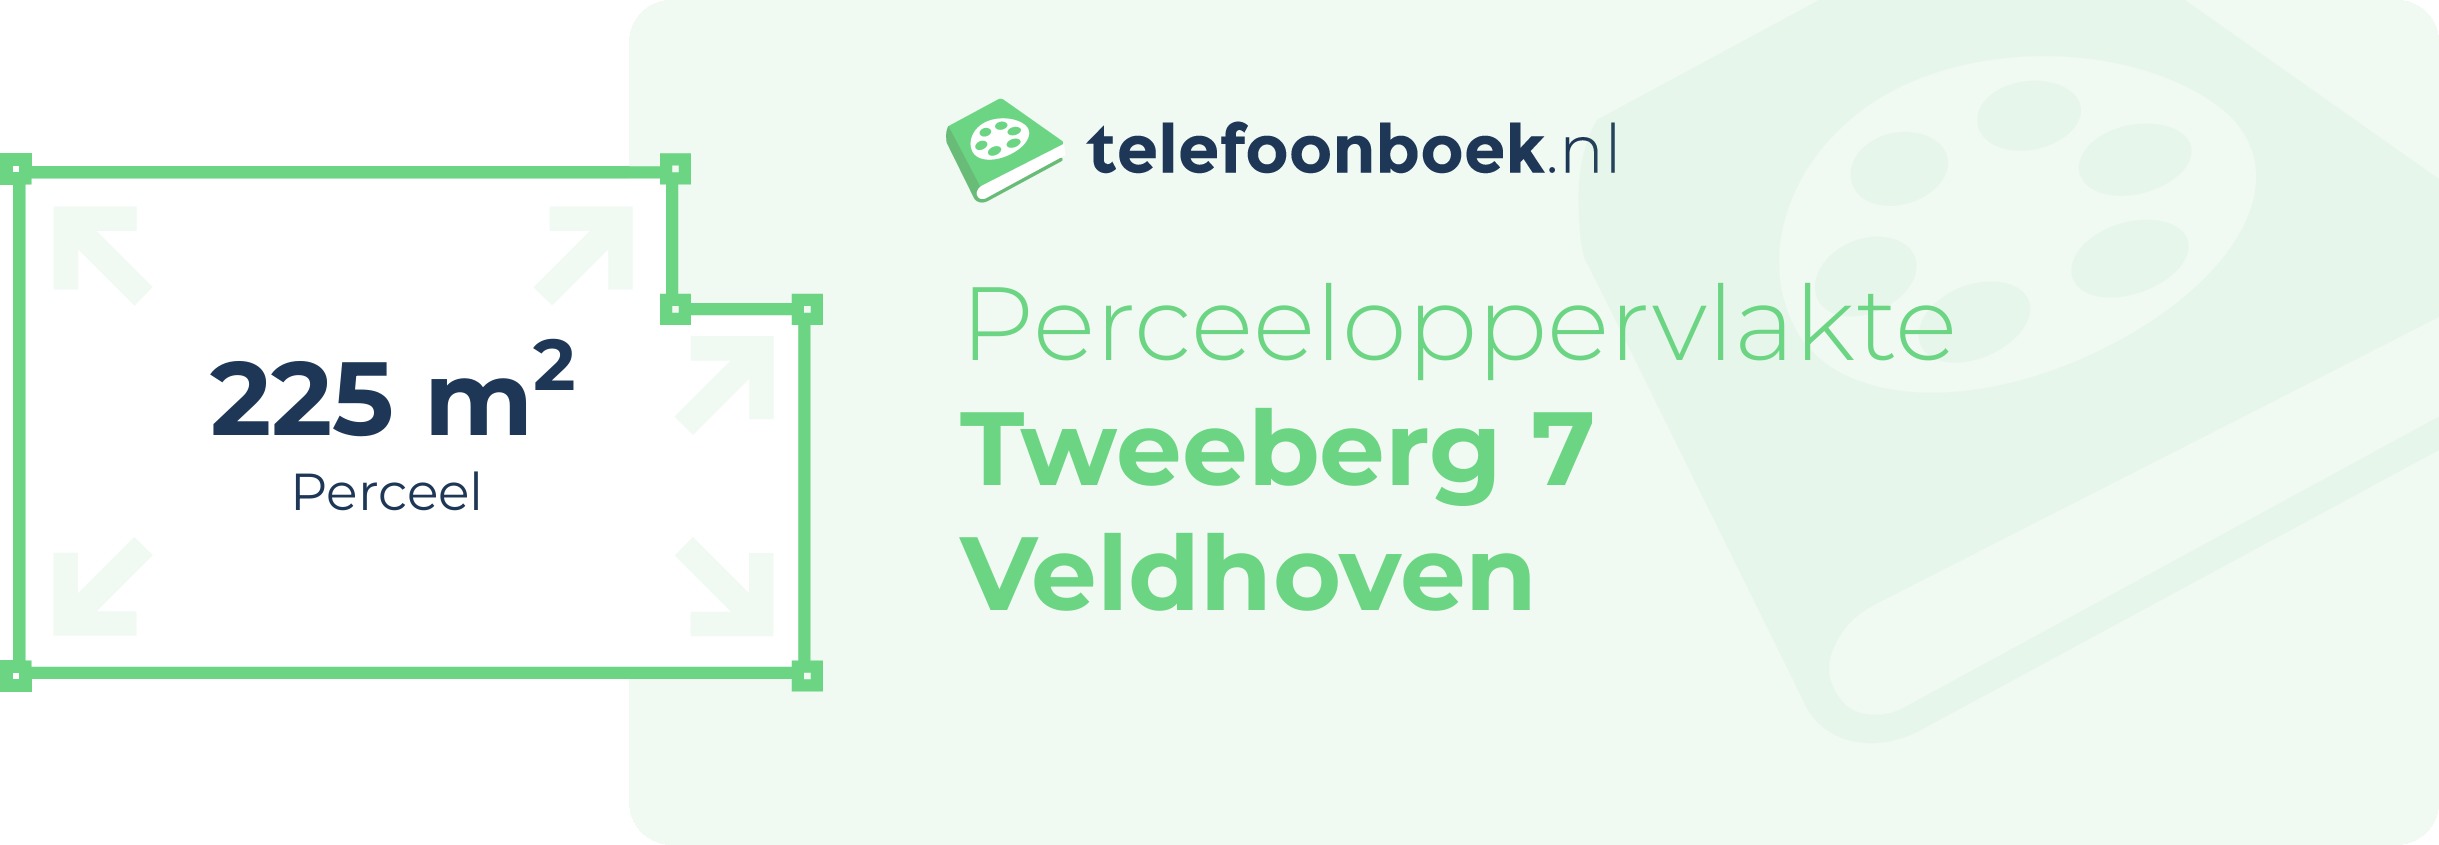 Perceeloppervlakte Tweeberg 7 Veldhoven